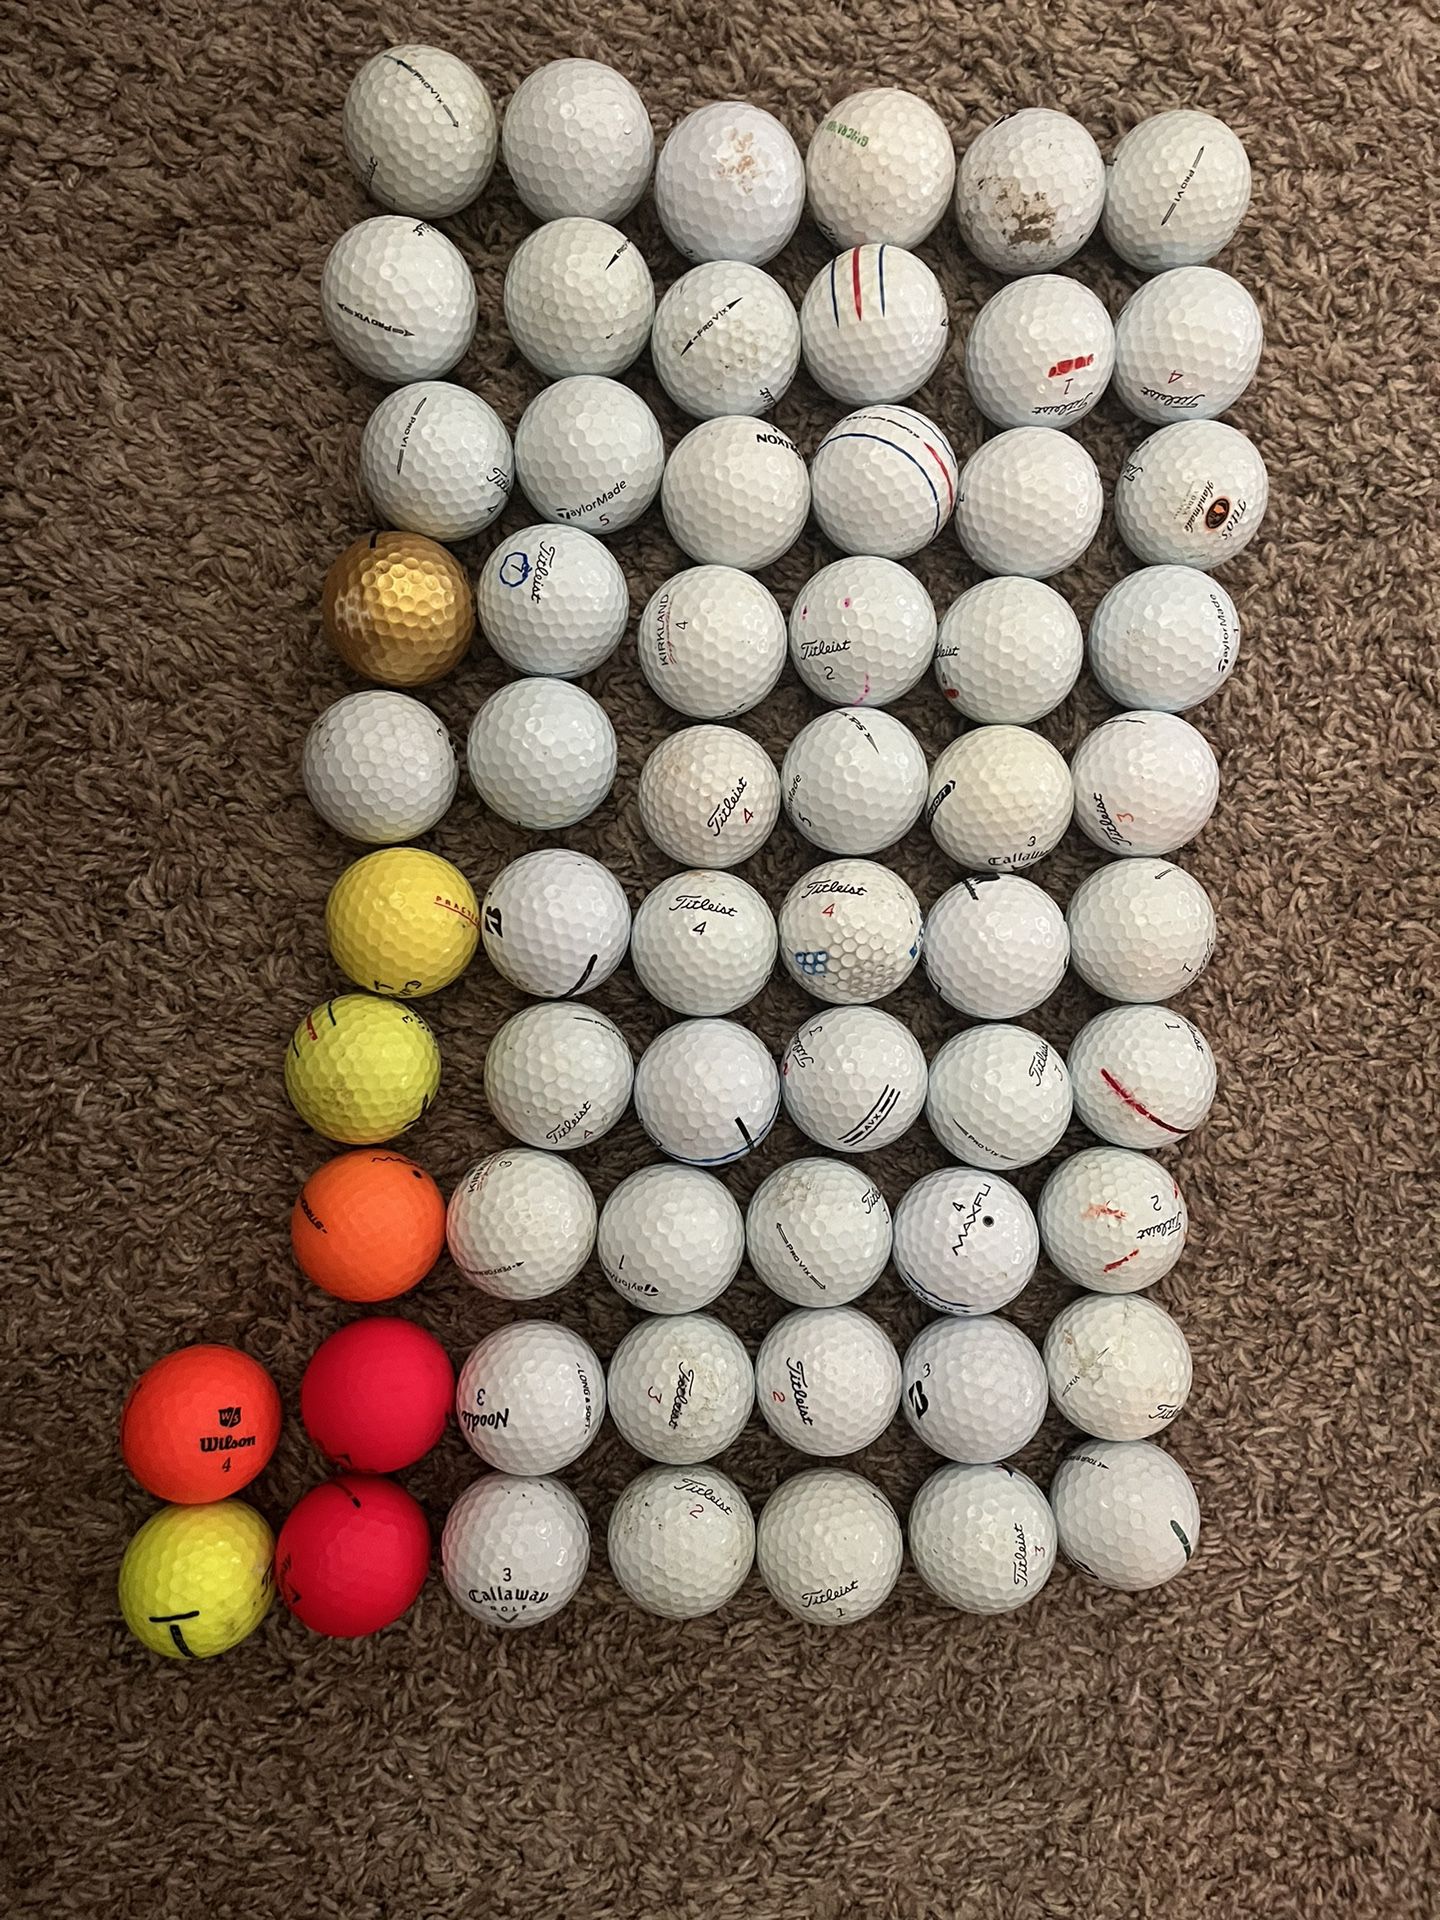 62 Golf balls